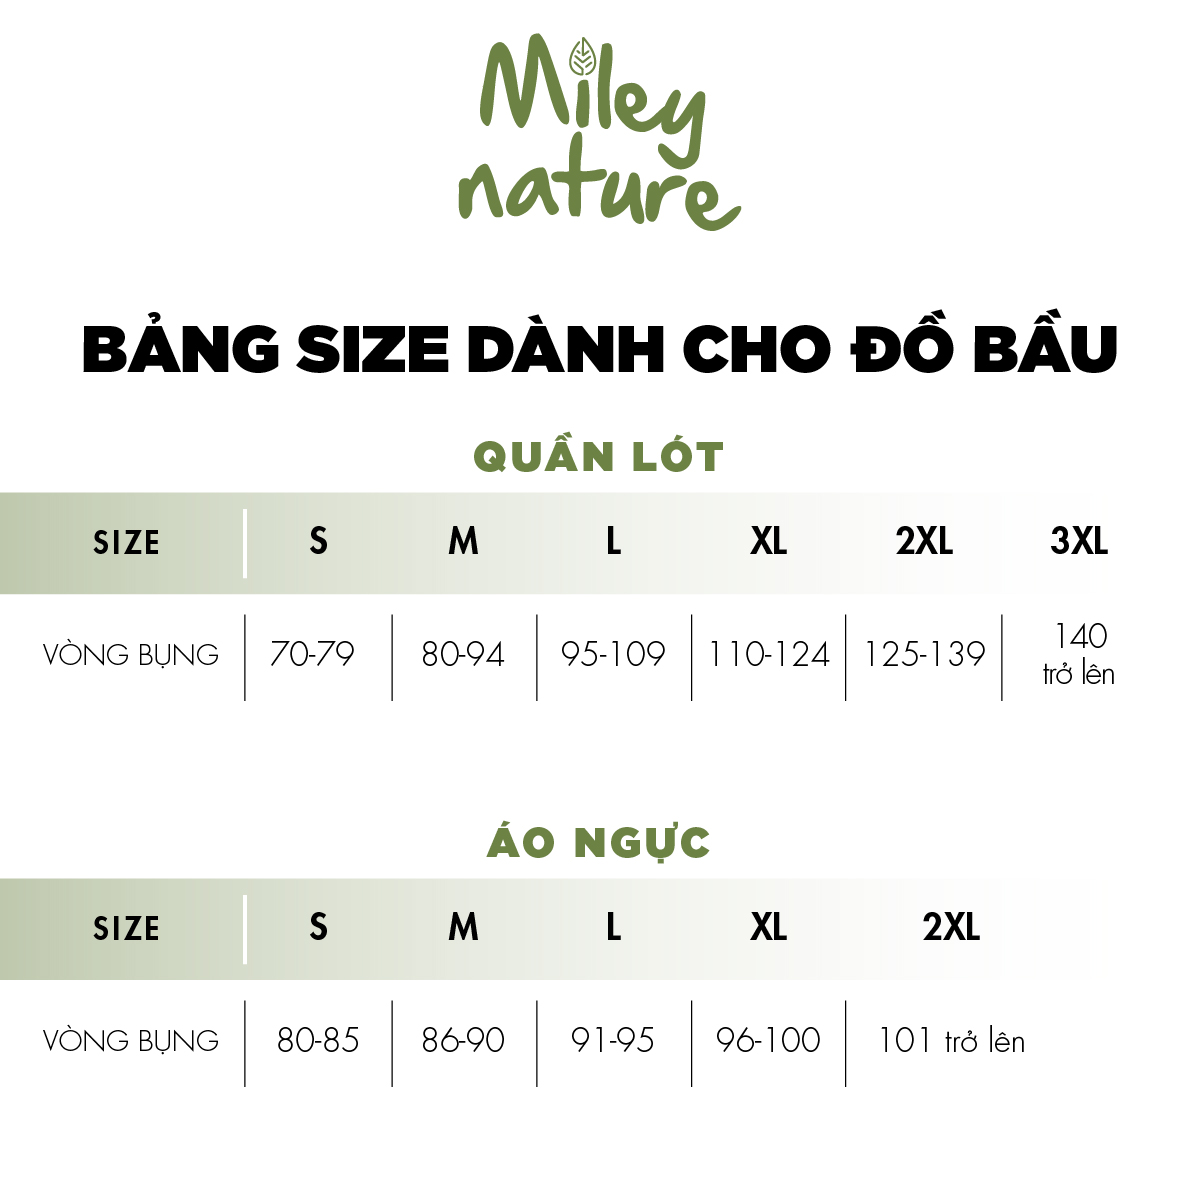 Quần Lót Bầu Cạp Chéo Cotton Lụa Miley Nature Miley Lingerie PRC0200